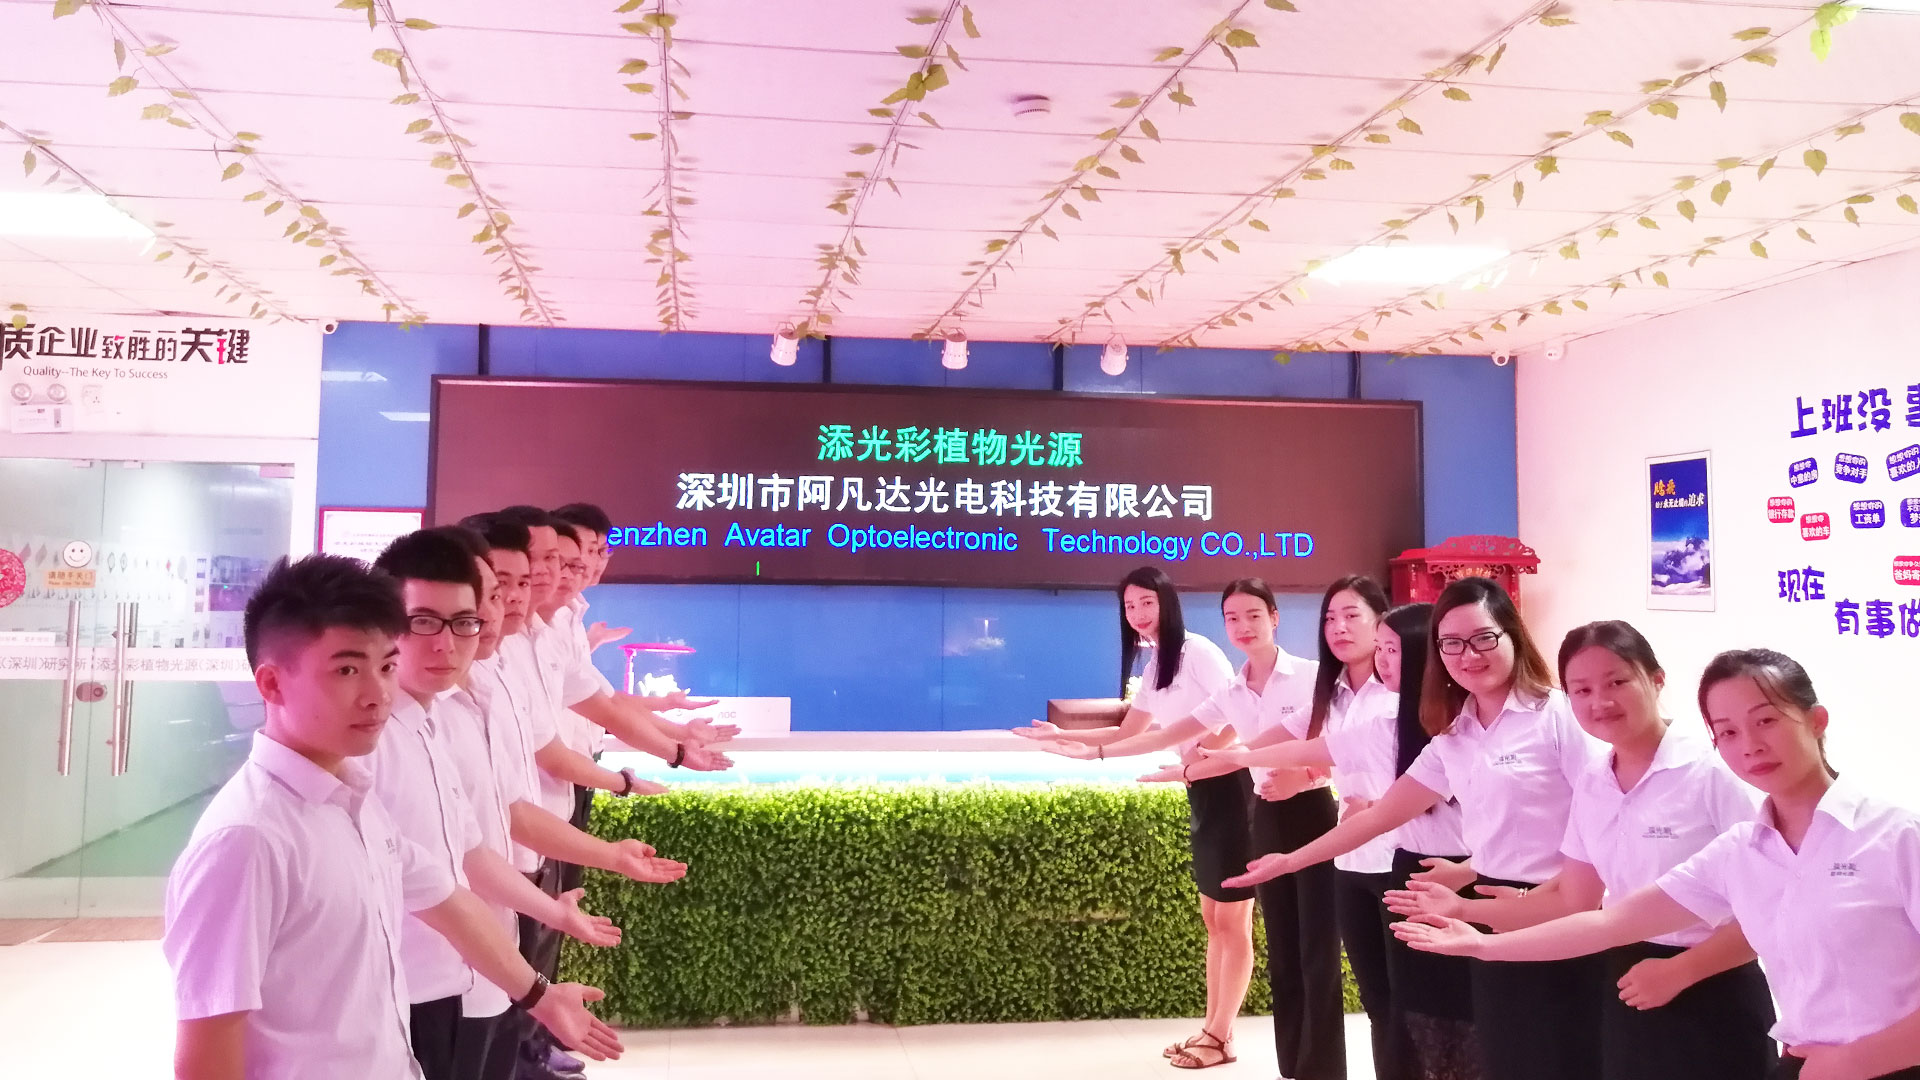 Gran venta de luces de cultivo de plantas led y sistema de cultivo hidropónico de Shenzhen Avatar Optoelectronic Technology co.,ltd